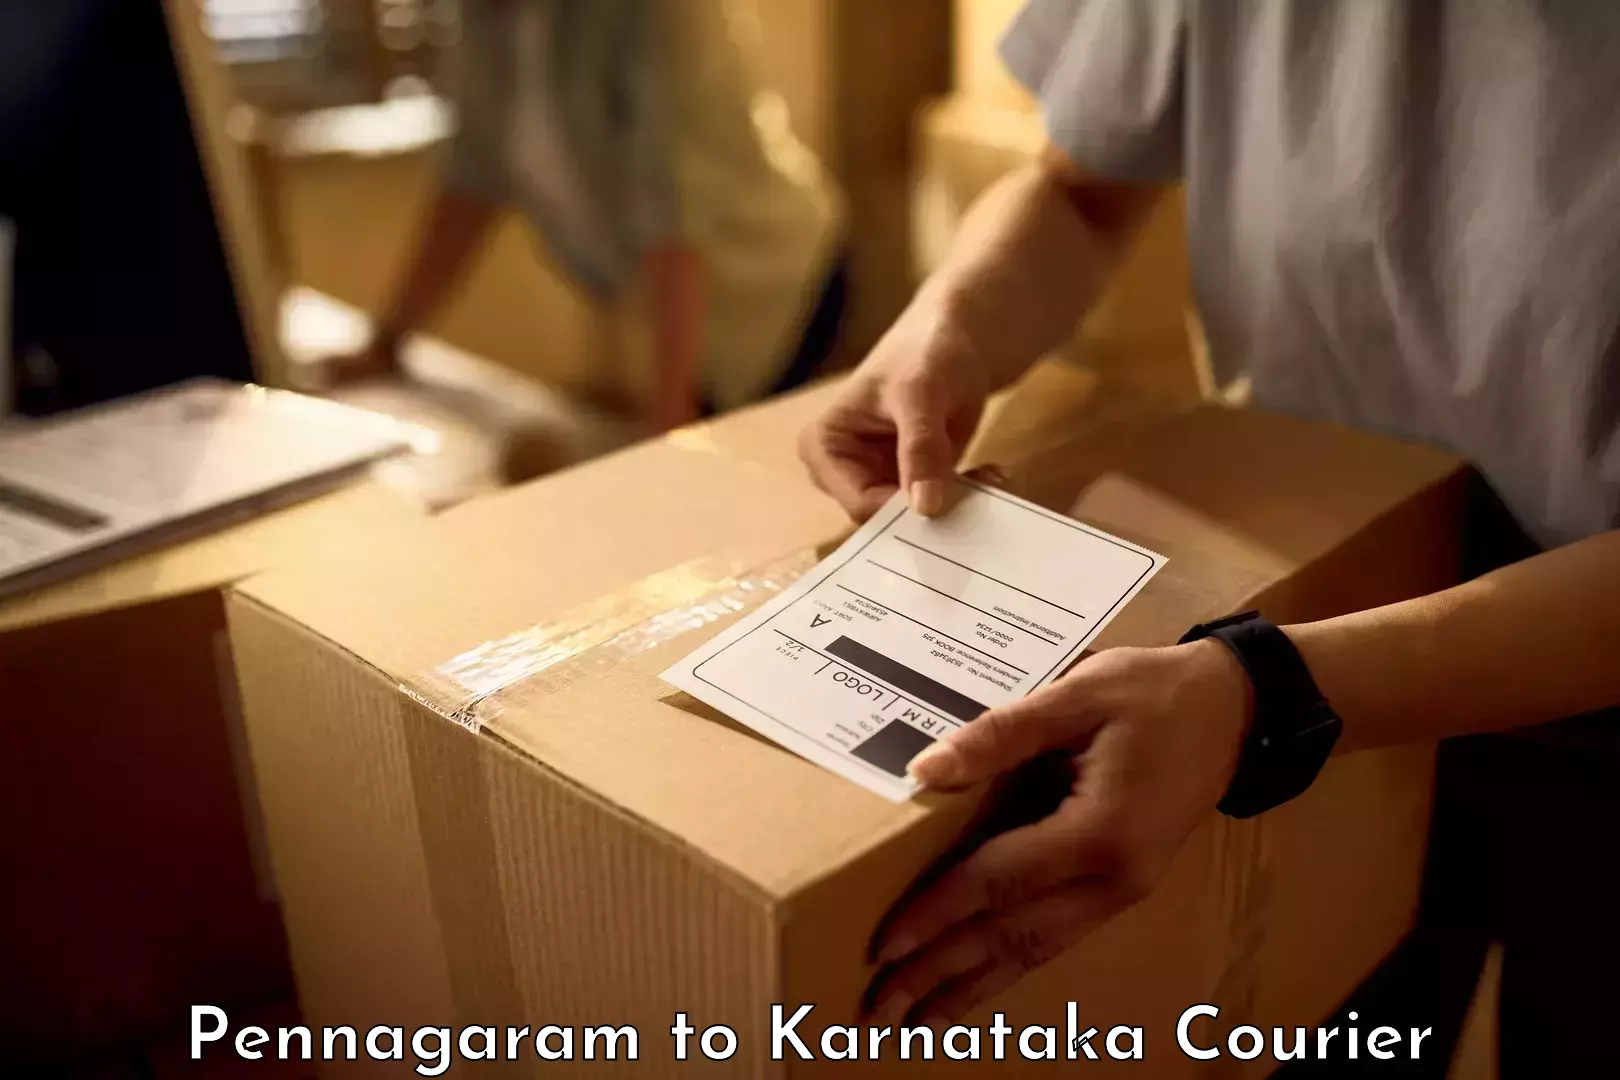 Baggage handling services Pennagaram to Karnataka